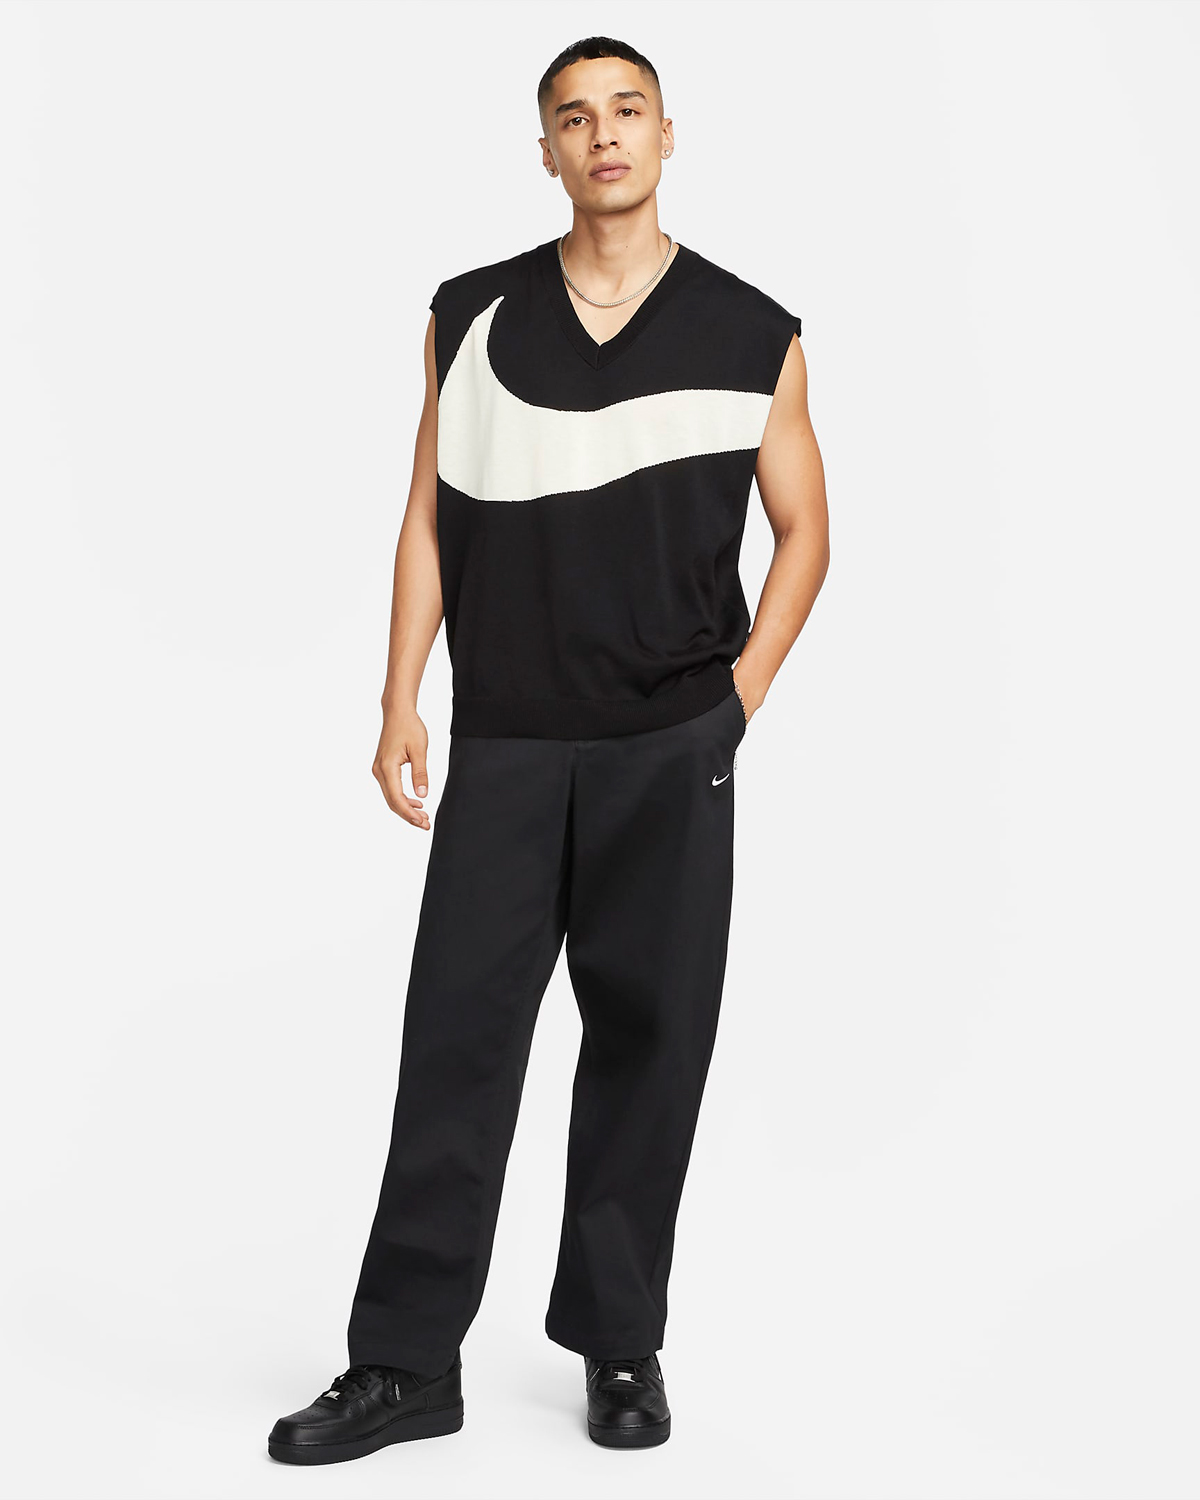 Nike-Sportswear-Swoosh-Sweater-Vest-Black-Coconut-Milk-Outfit